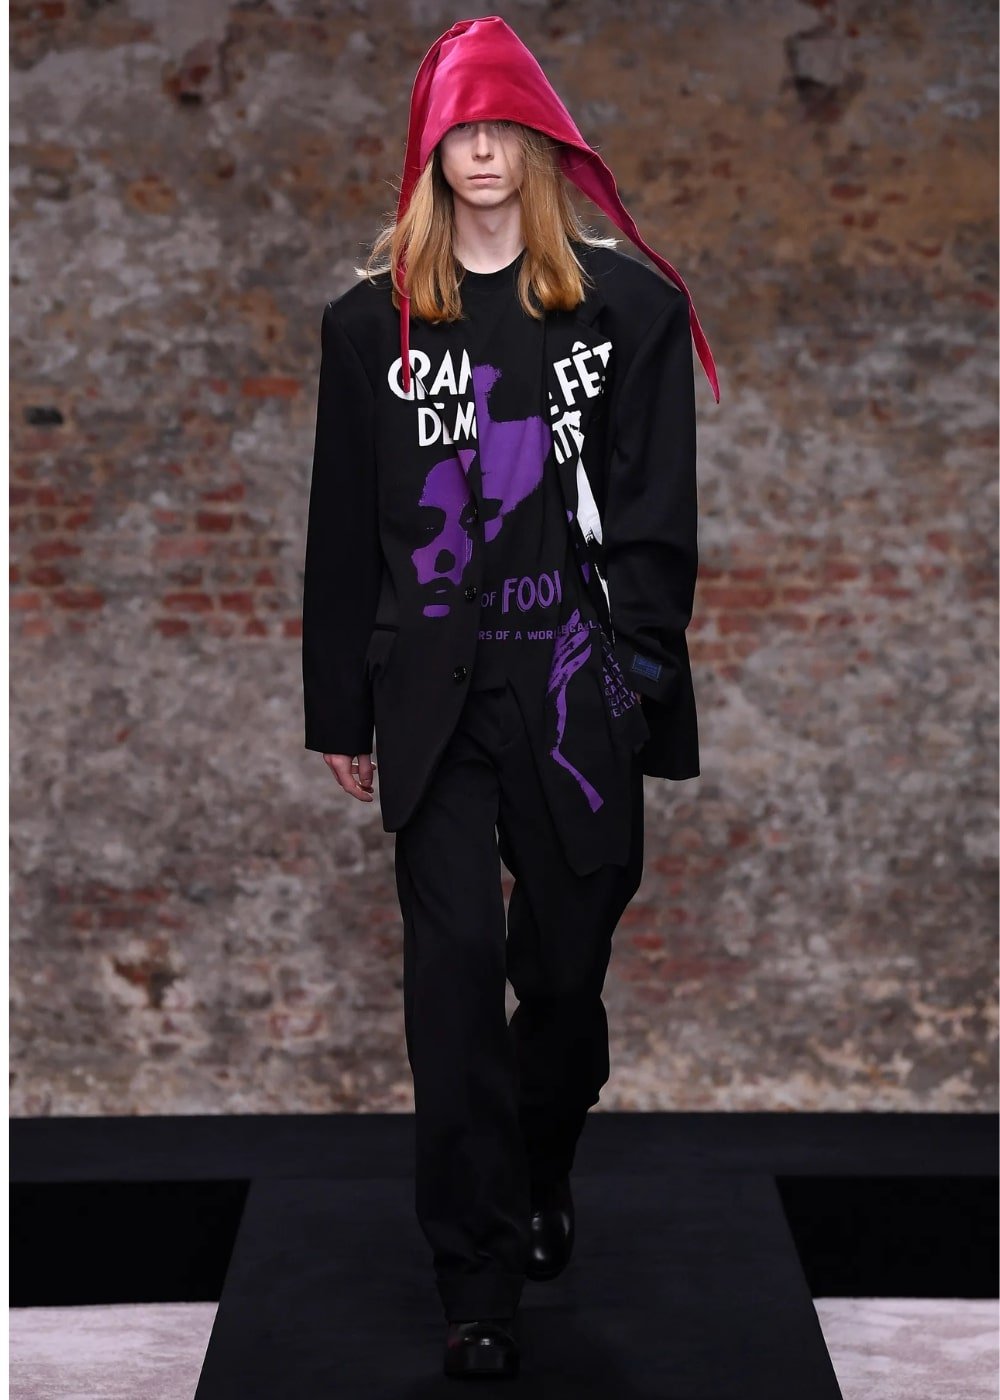 Raf Simons A/W 2022 - calça preta, tshirt estampada, blazer e chapeu rosa - London Fashion Week - Outono - modelo andando pela passarela - https://stealthelook.com.br